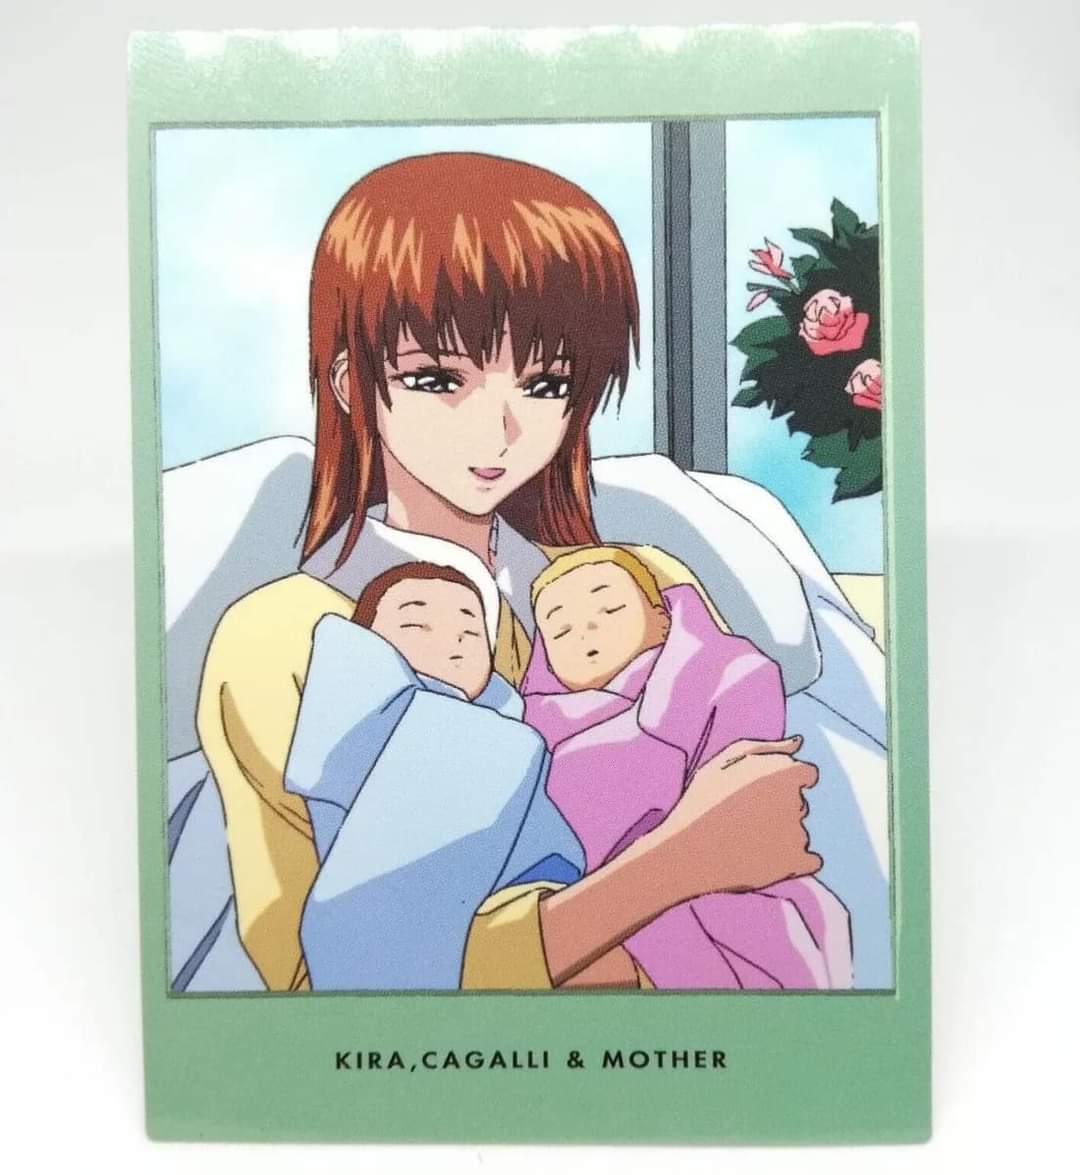 Kira, Cagalli and Mother

#Kirayamato
#Cagalliyulaattha
#カガリ
#カガリフィギュア欲しい